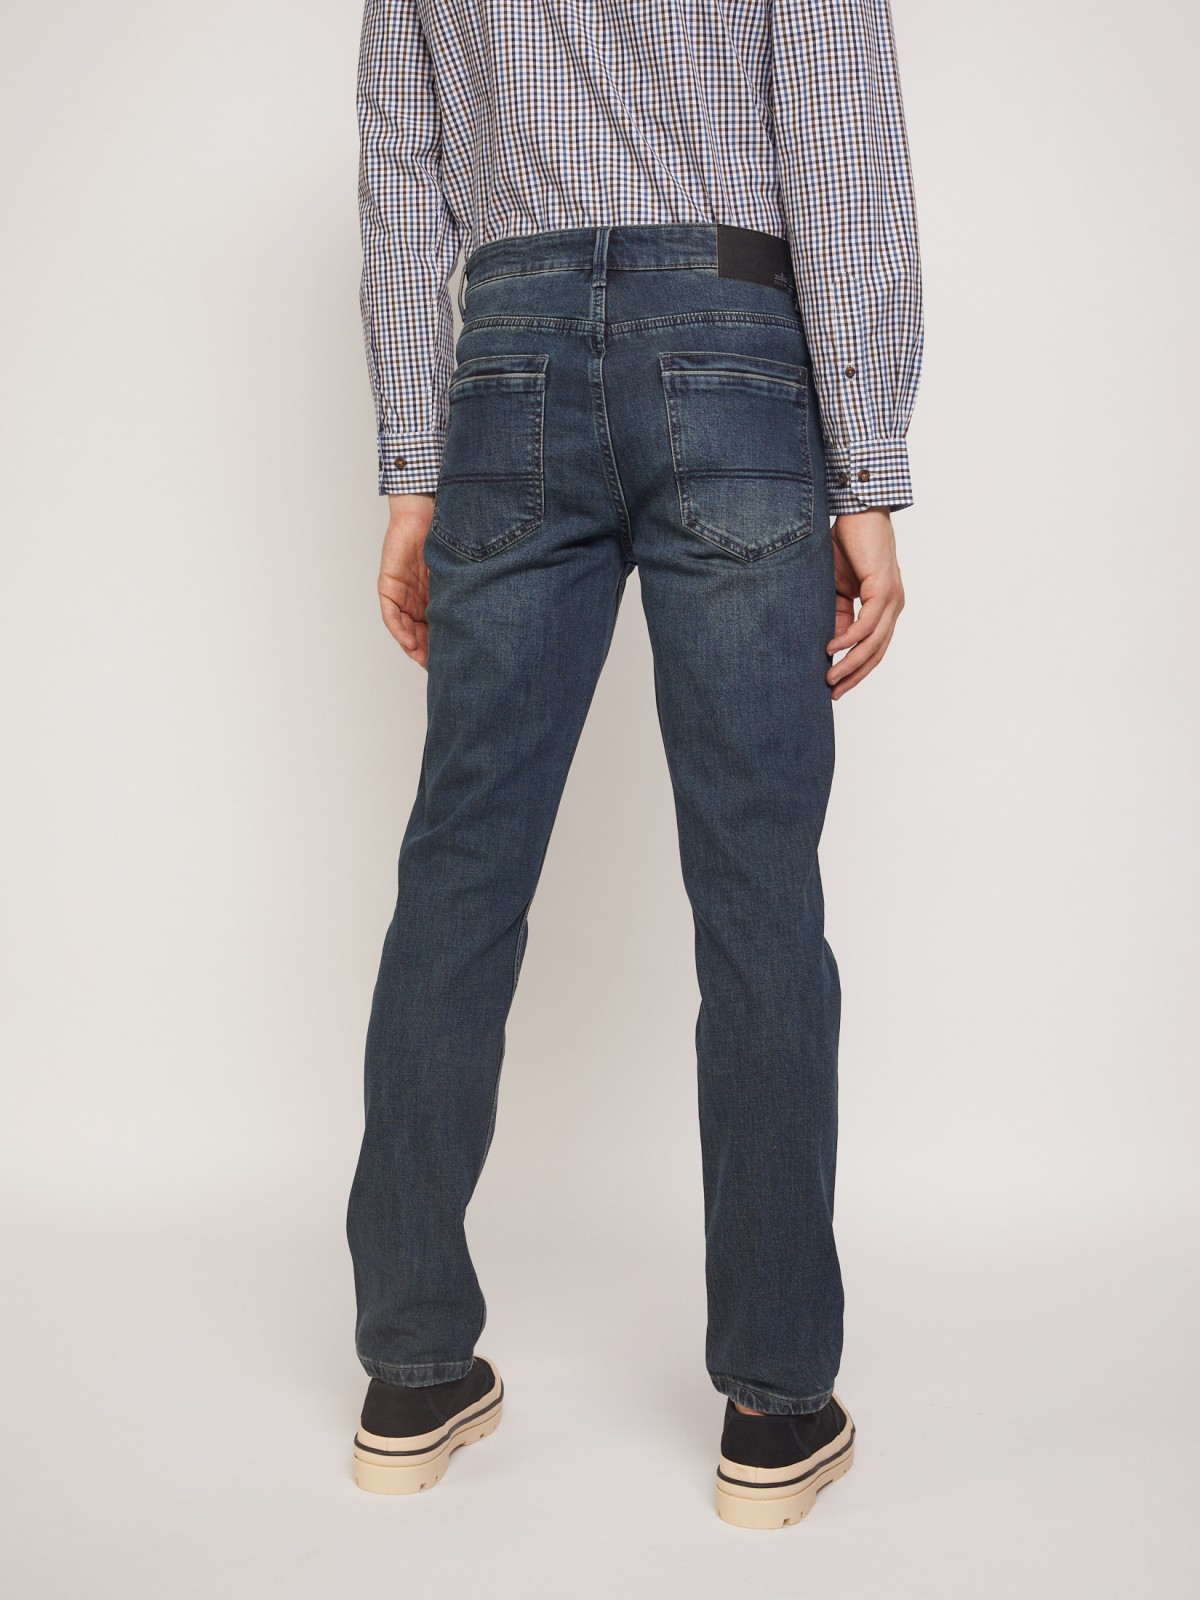 Брюки джинсовые zolla 01134714S153, цвет темно-бирюзовый, размер 29 - фото 5